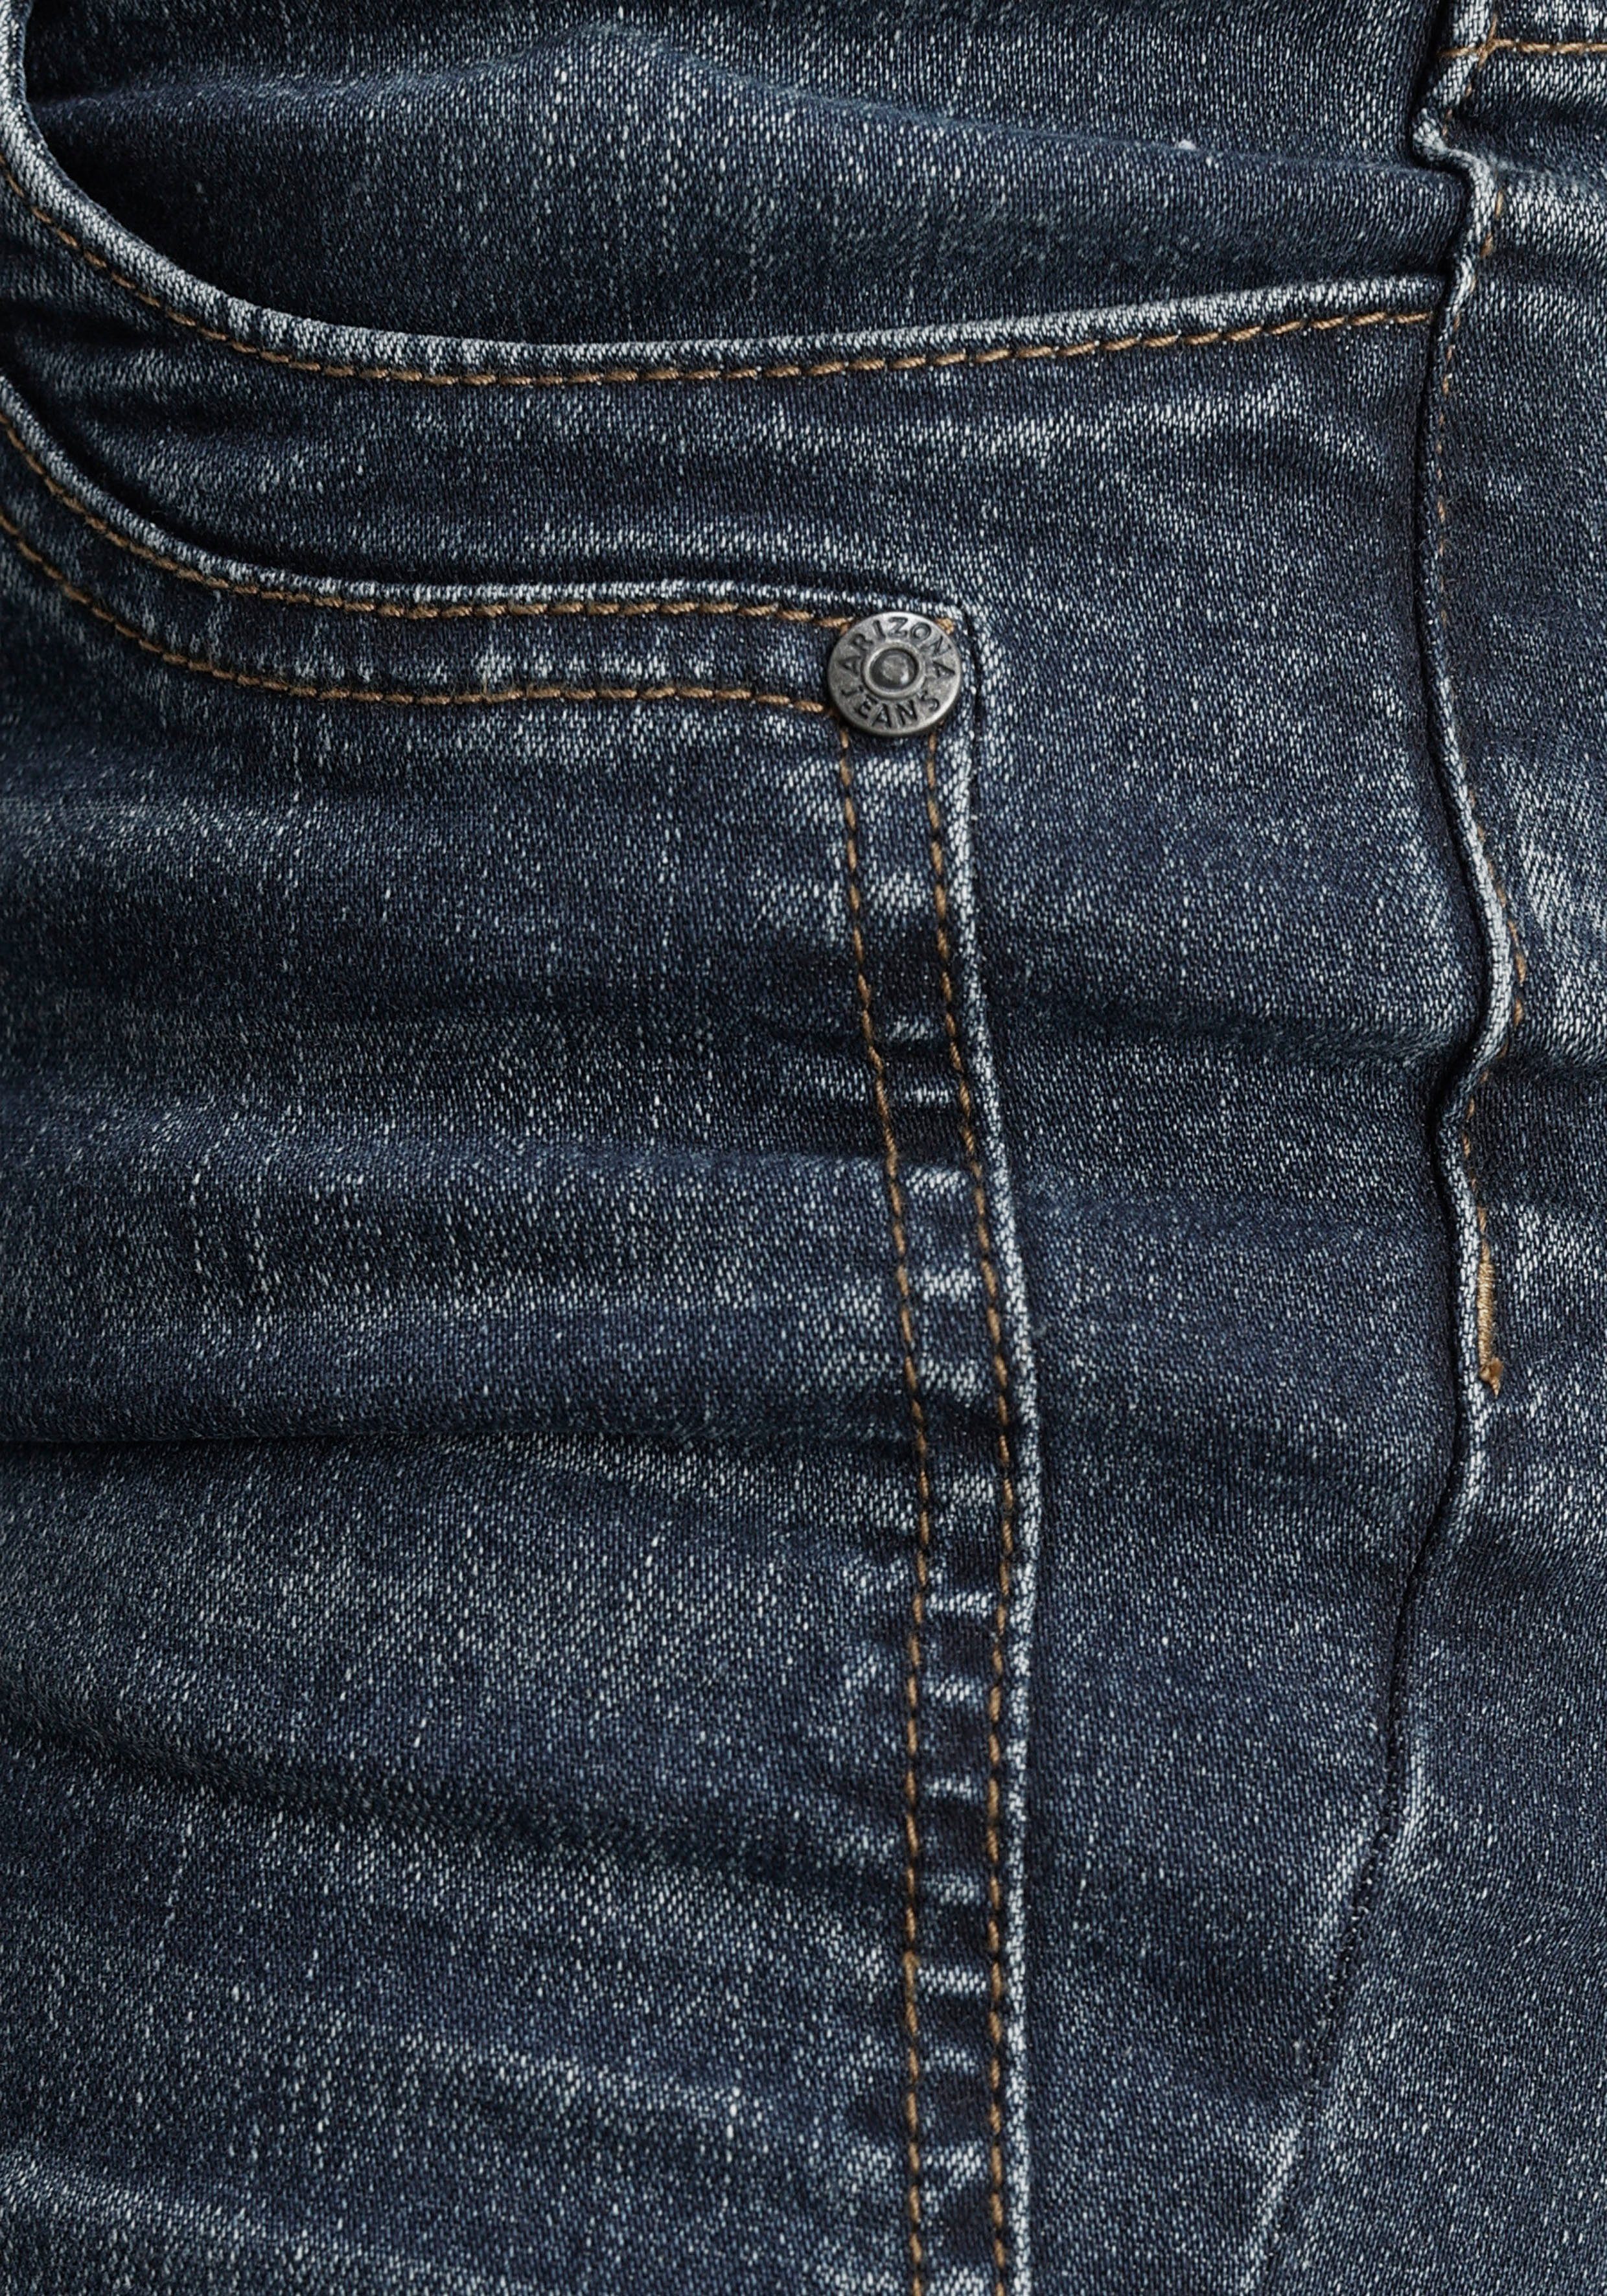 Arizona Waist Low darkblue-used Keileinsätzen mit Skinny-fit-Jeans